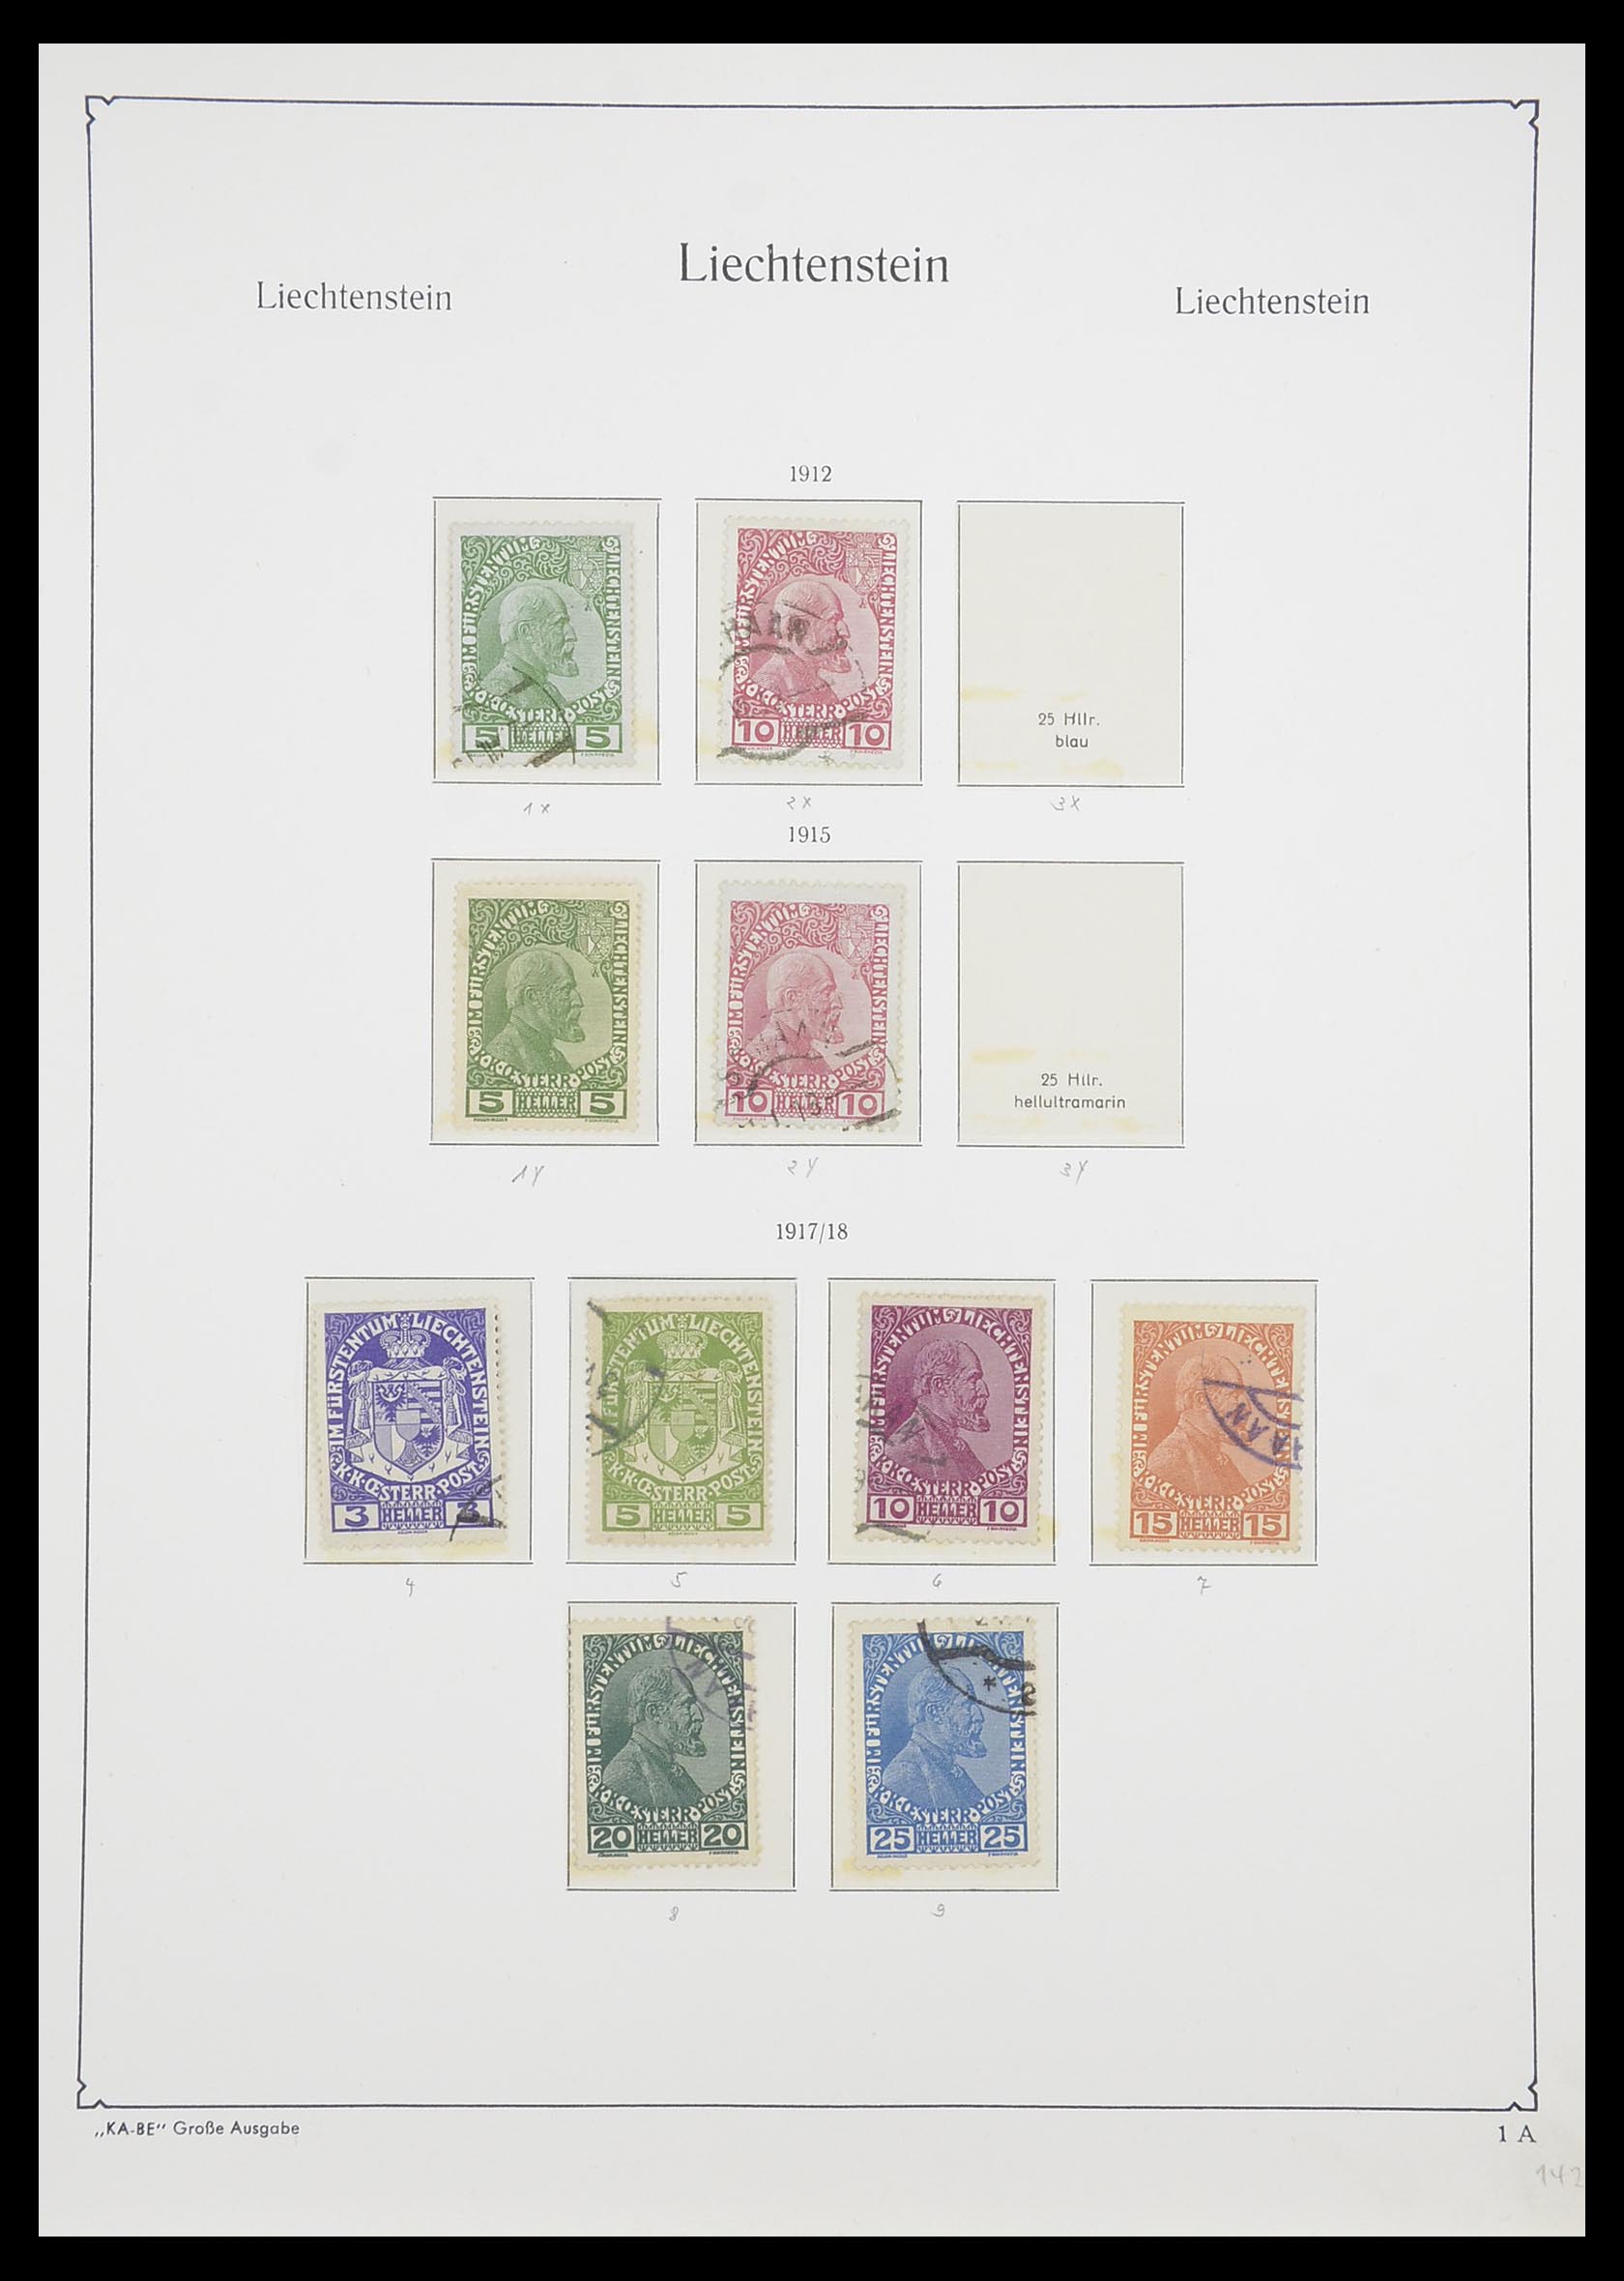 33493 002 - Stamp collection 33493 Liechtenstein 1912-2008.